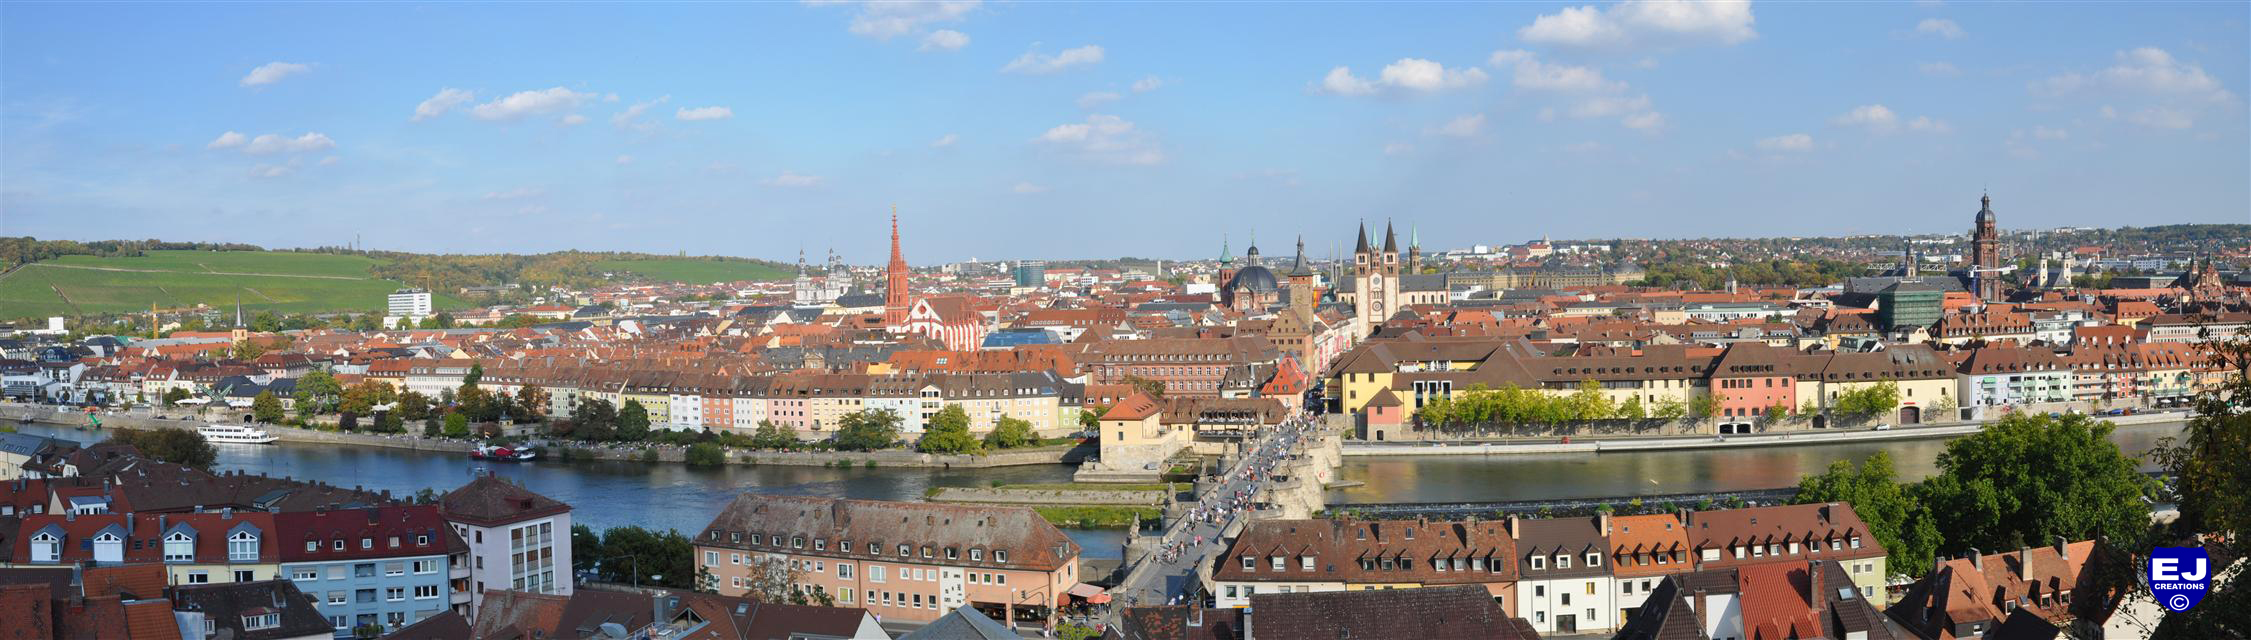 Wuerzburg 2011